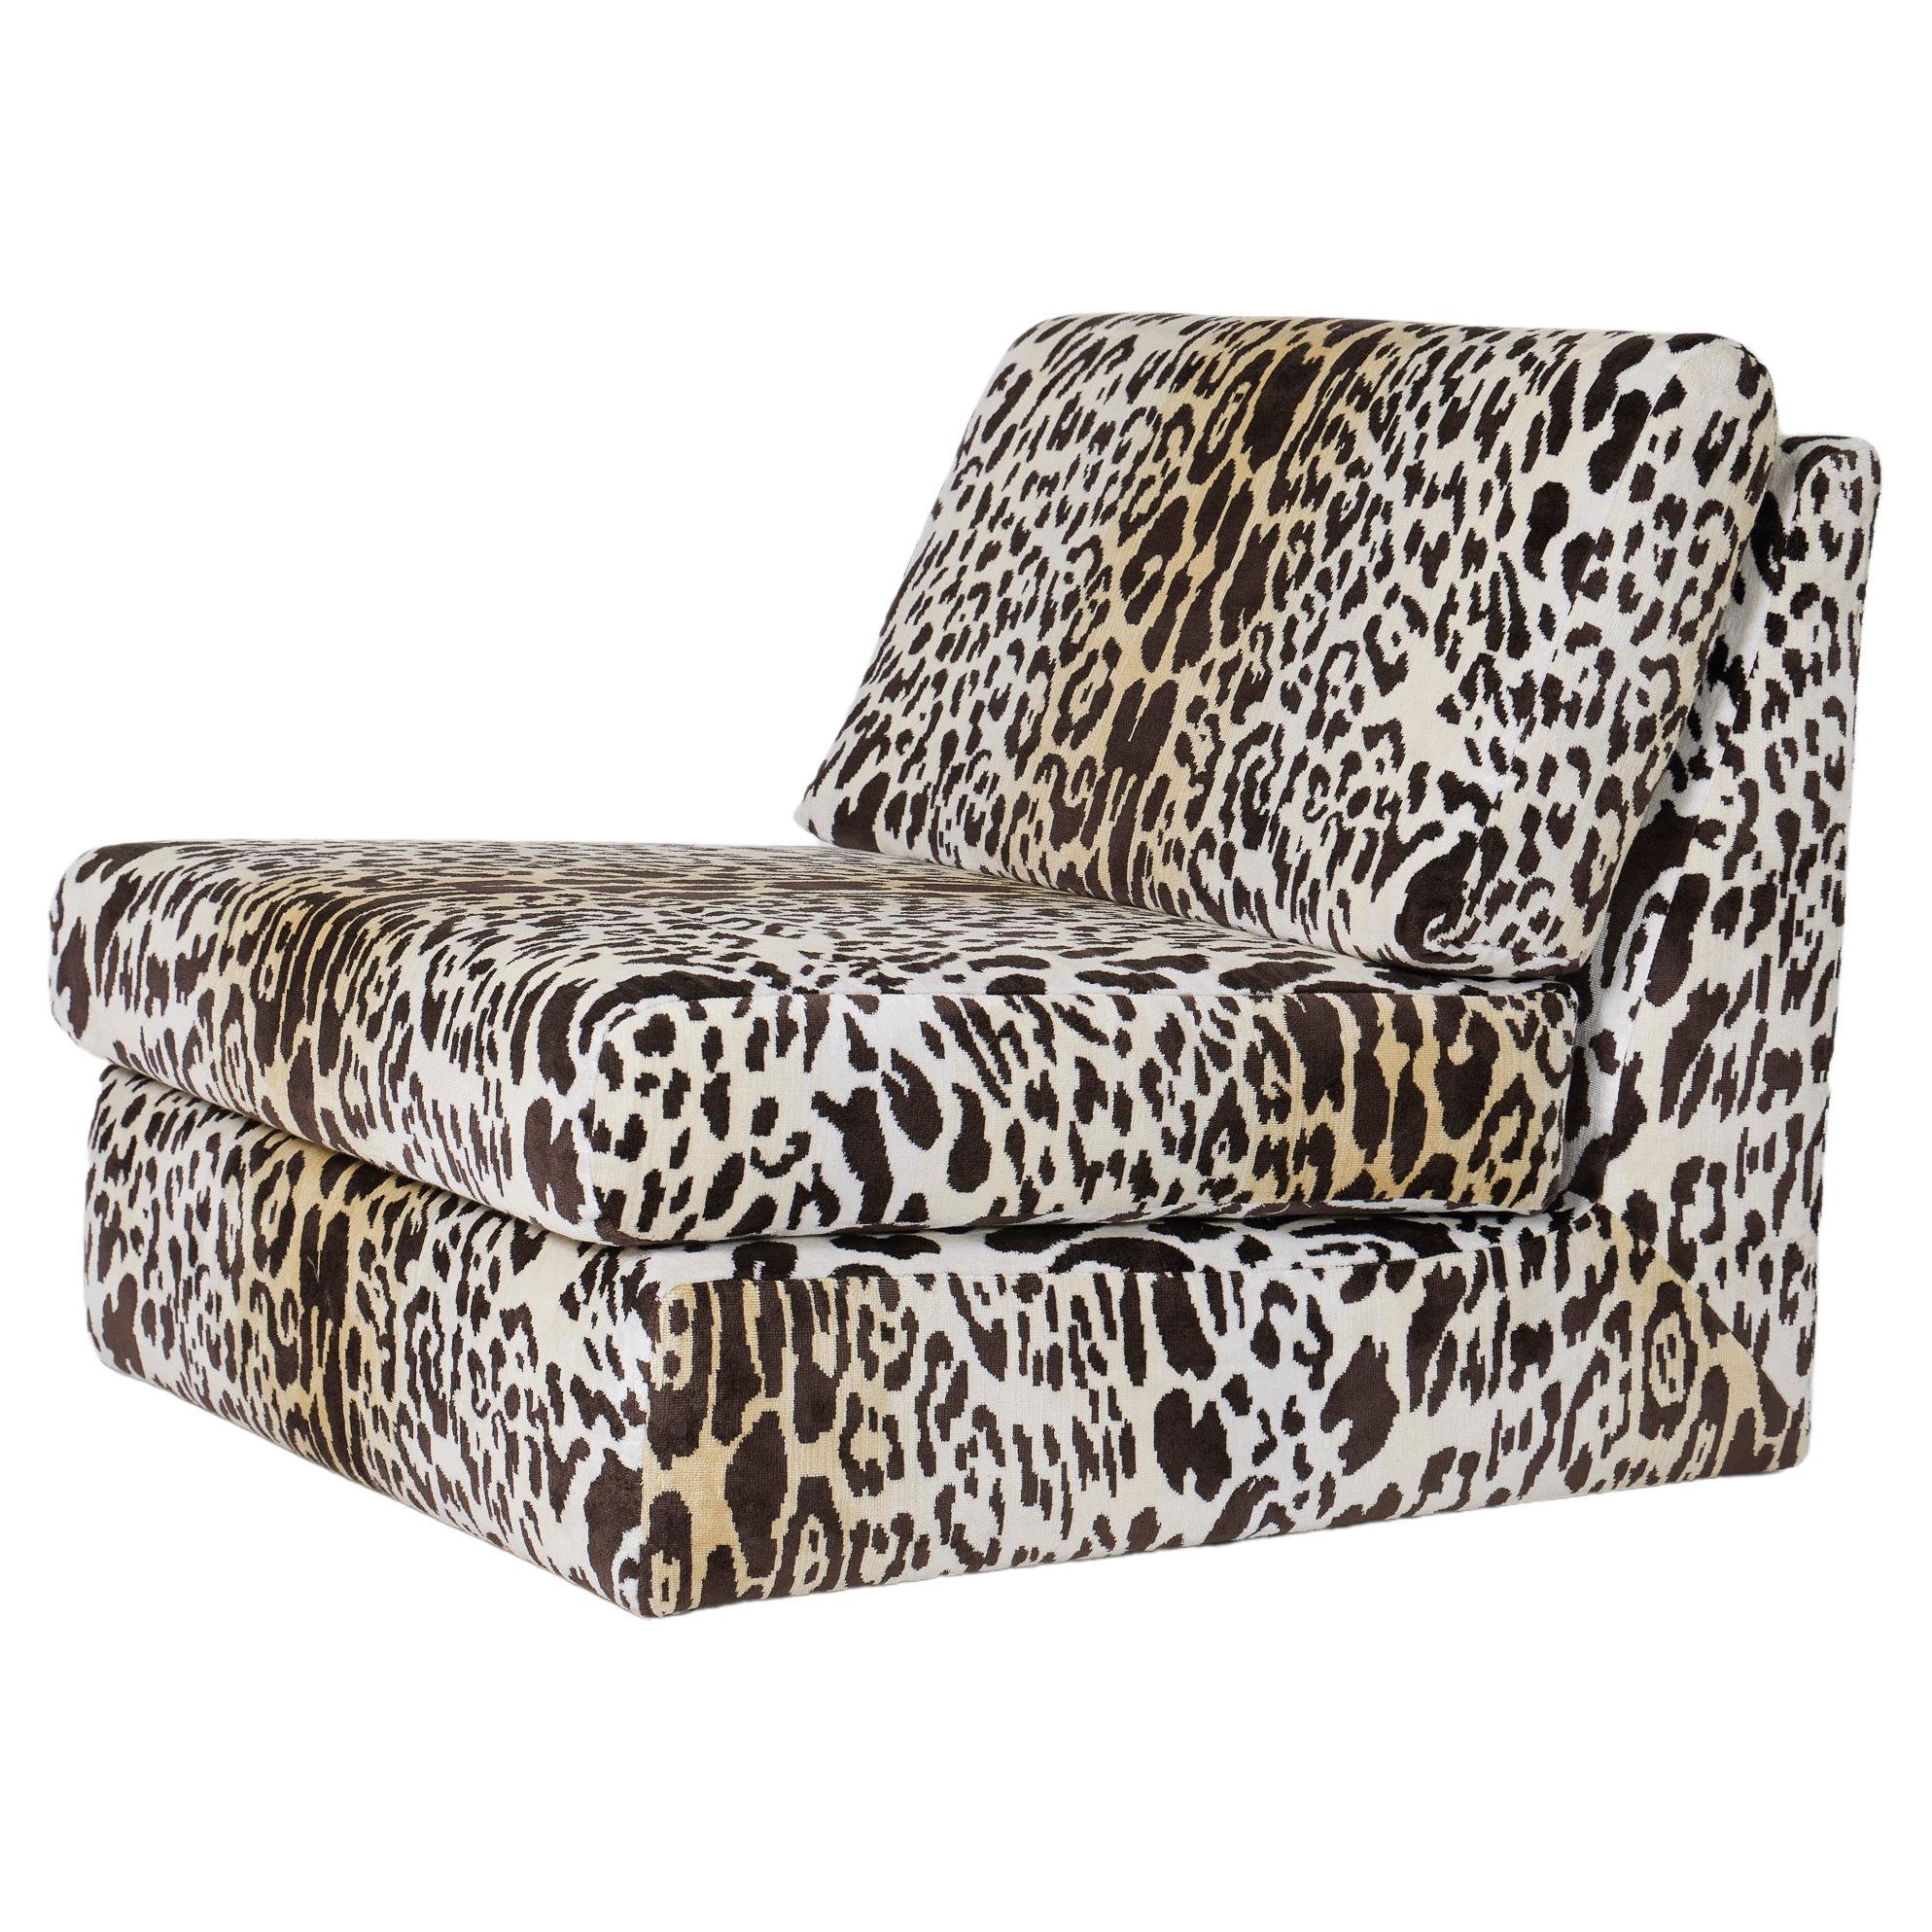 Sessel mit Leopardenmuster aus den 70er Jahren